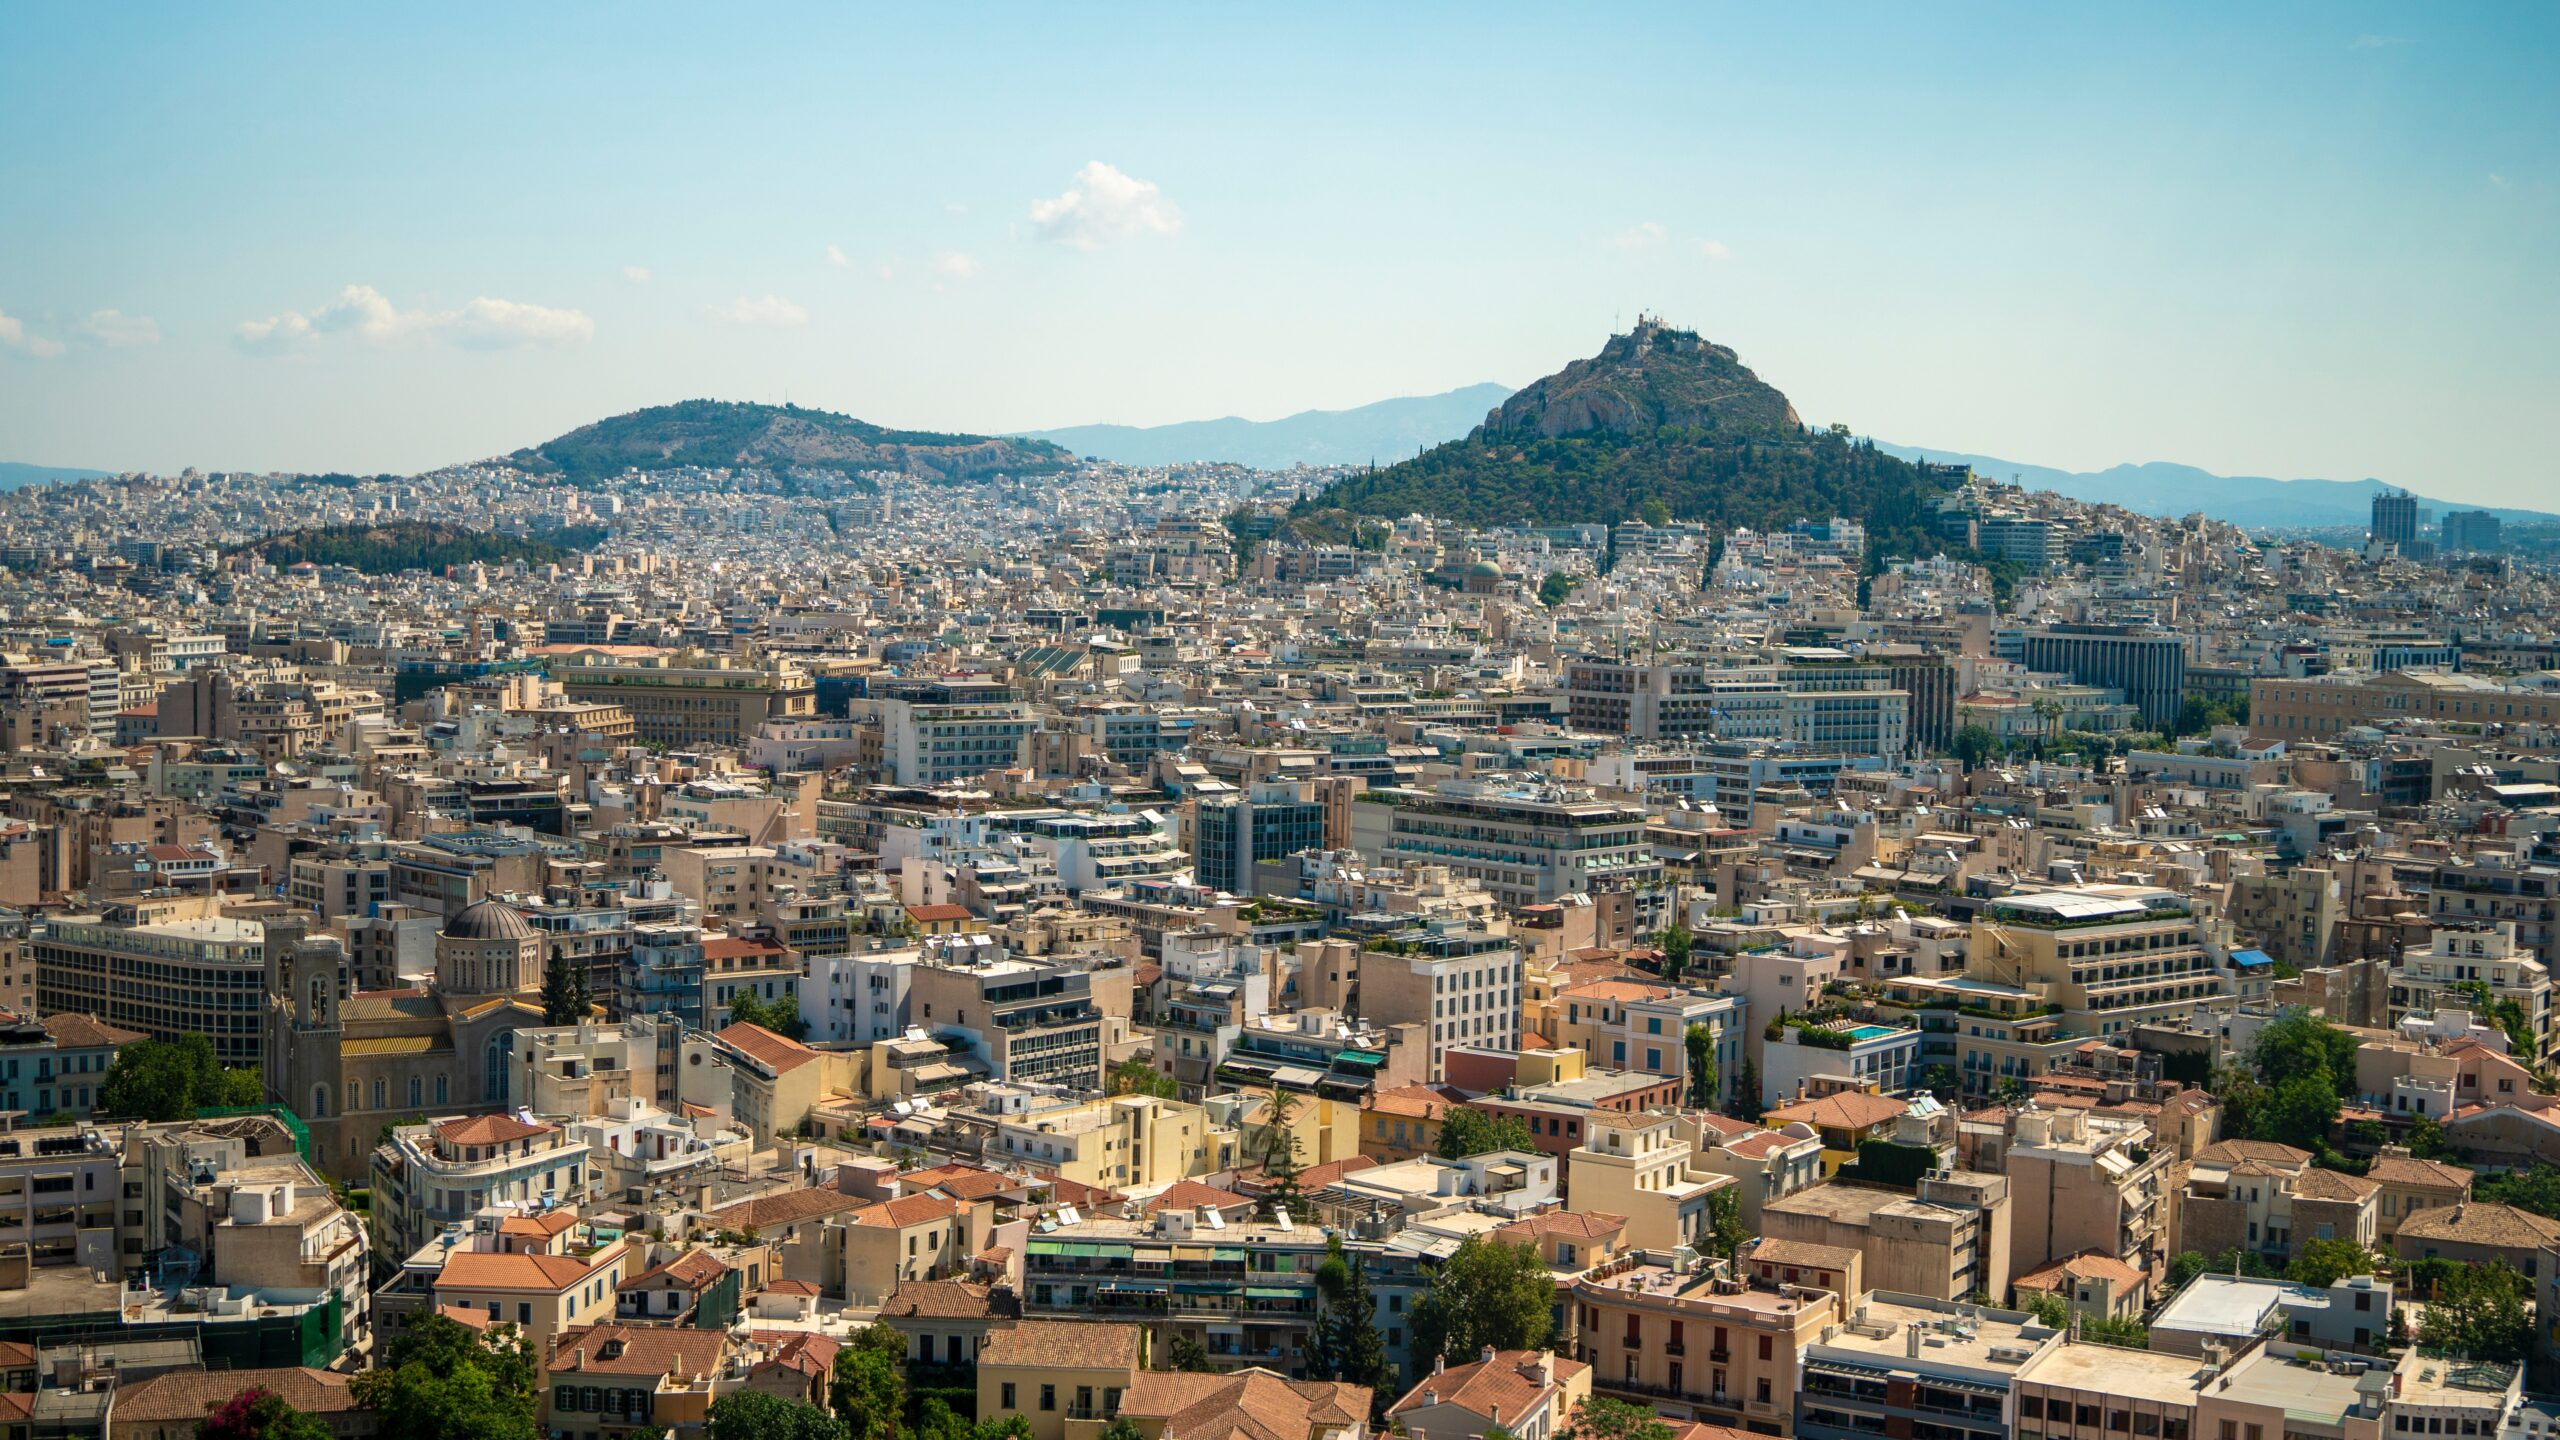 Αύξηση 20% στην πληρότητα των ξενοδοχείων της Αθήνας φέτος τον Μάρτιο σε σχέση με πέρυσι